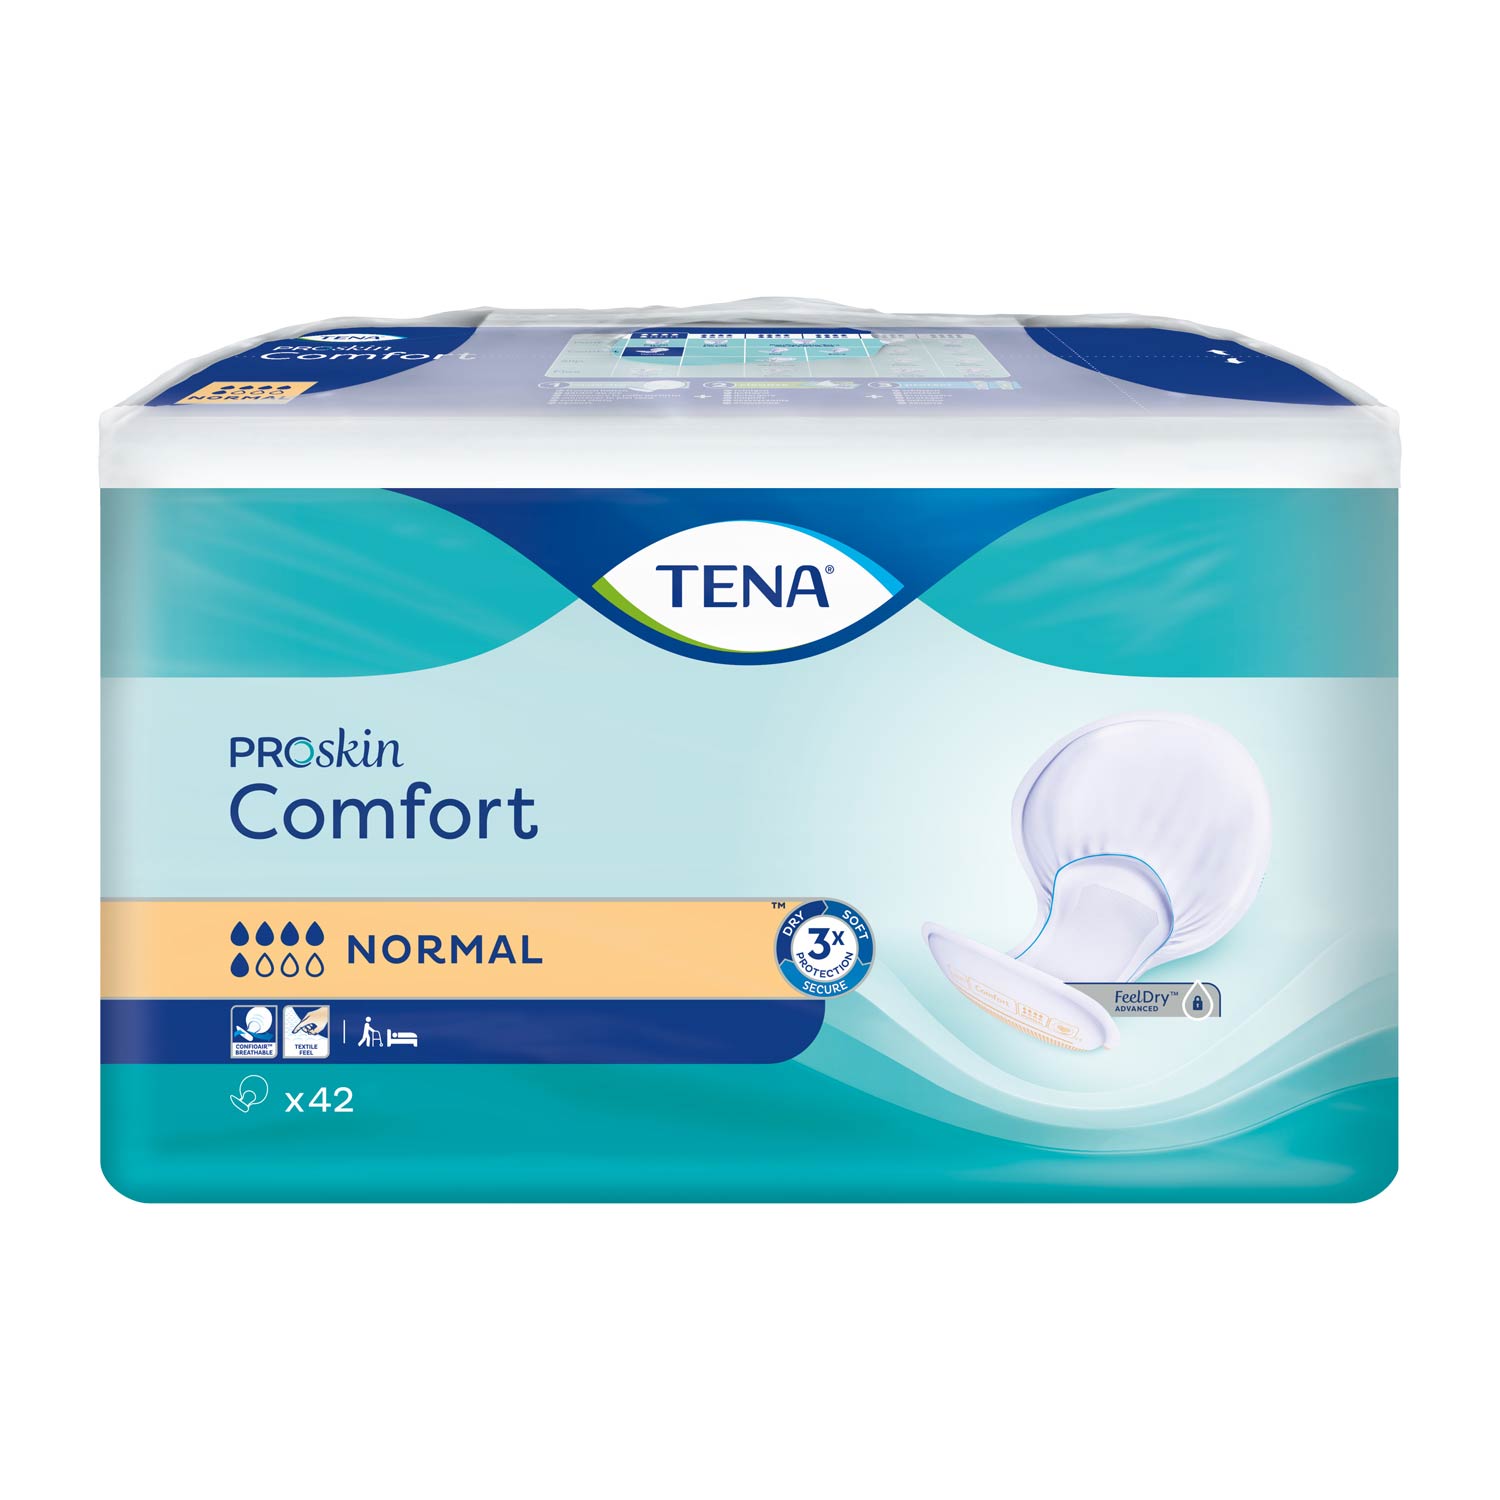 TENA Comfort Normal, Vorlage, Beutel (1 x 42 Stk.)